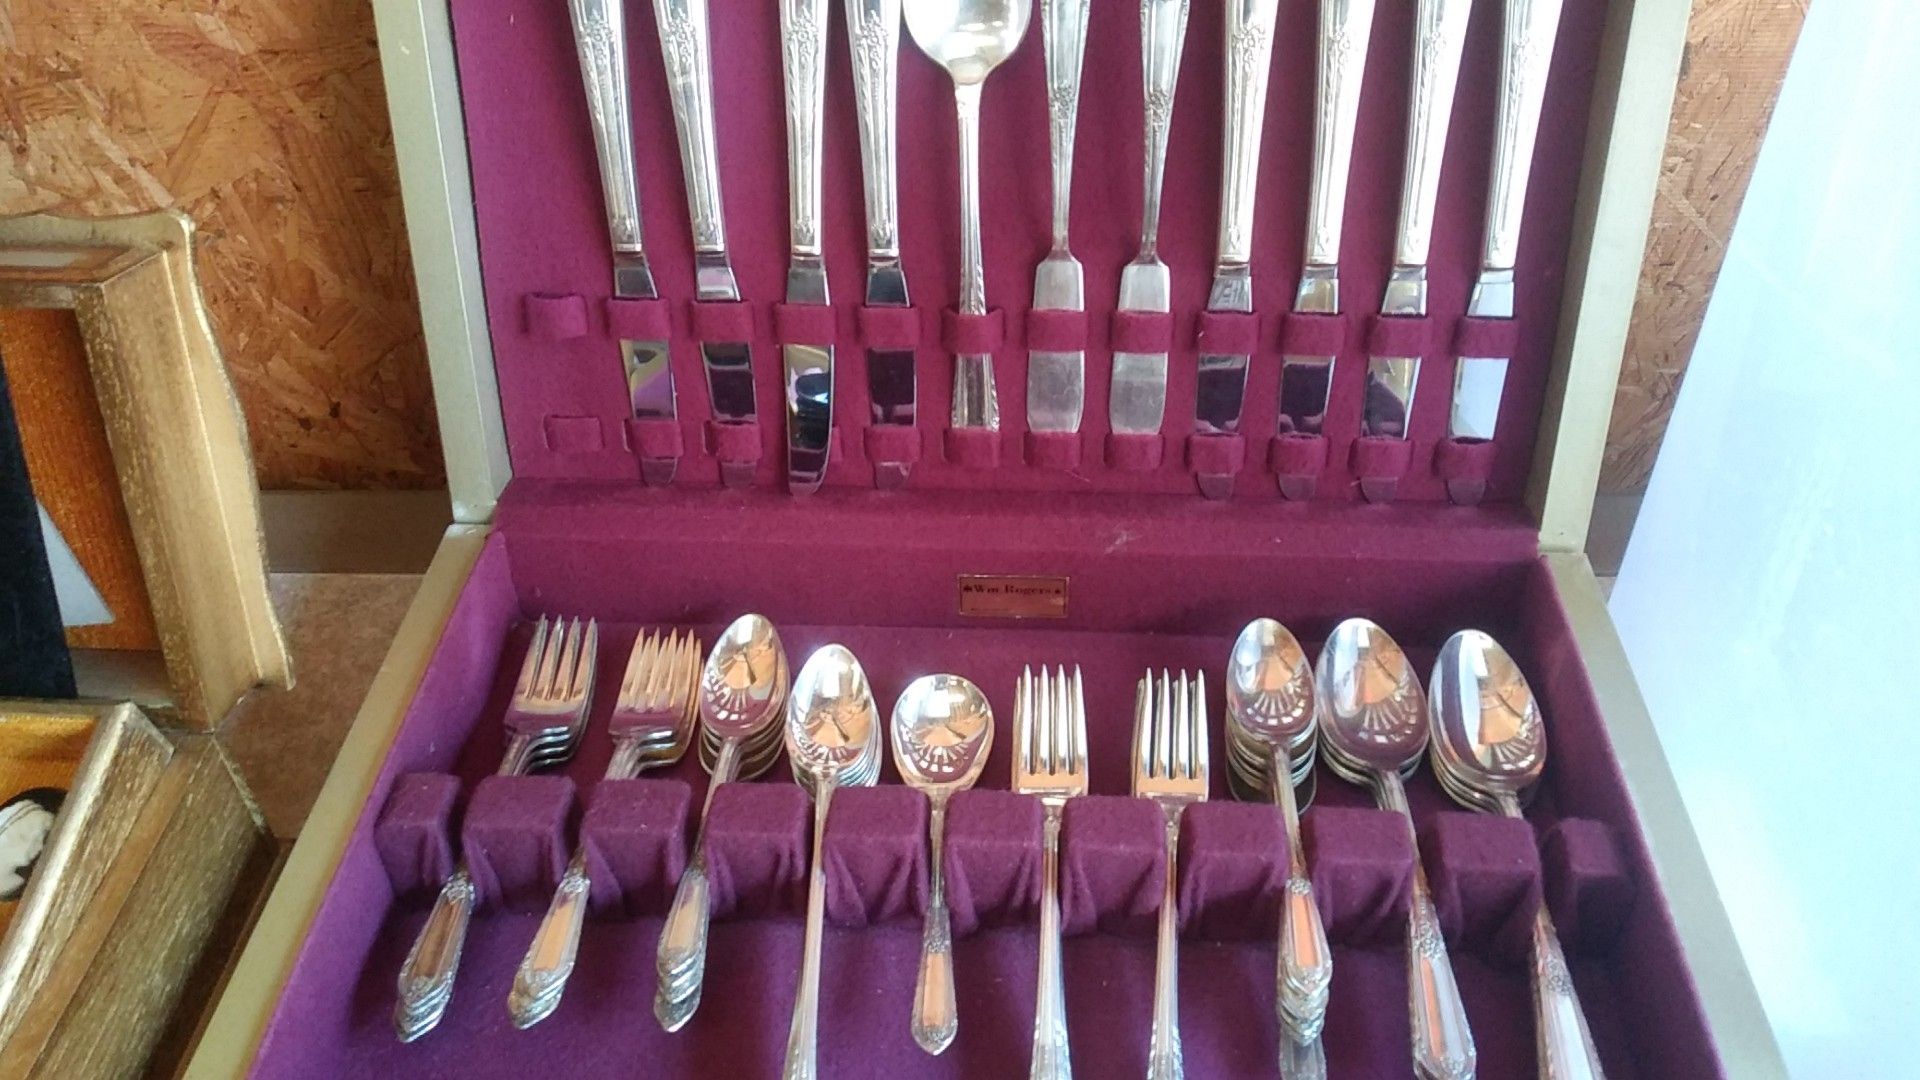 One vintage silverware set